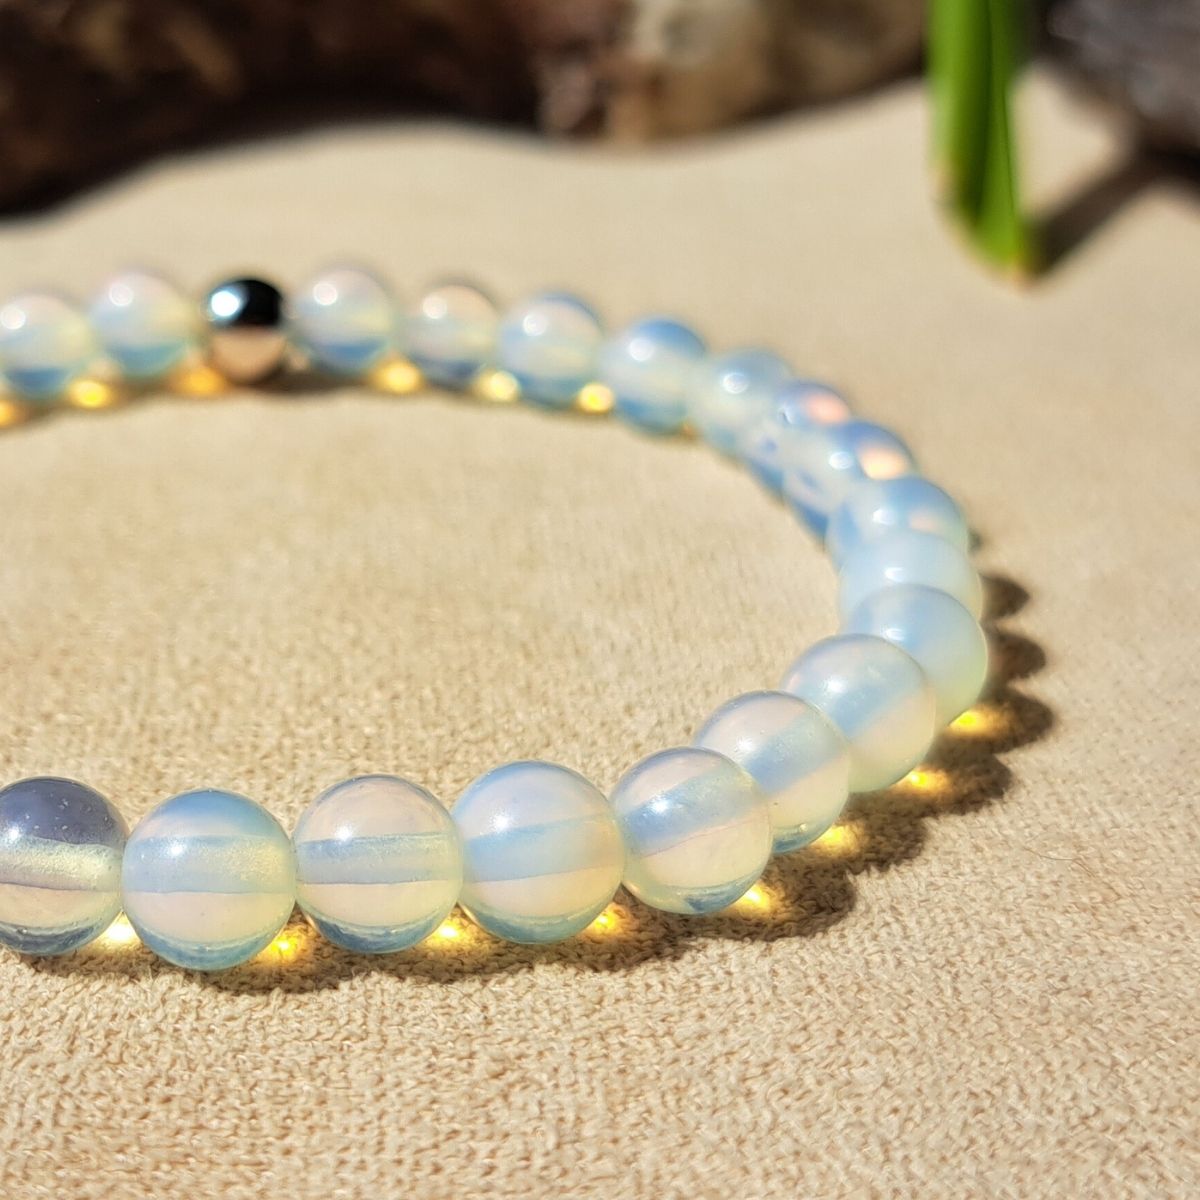 Opalite crystal bracelet close-up.